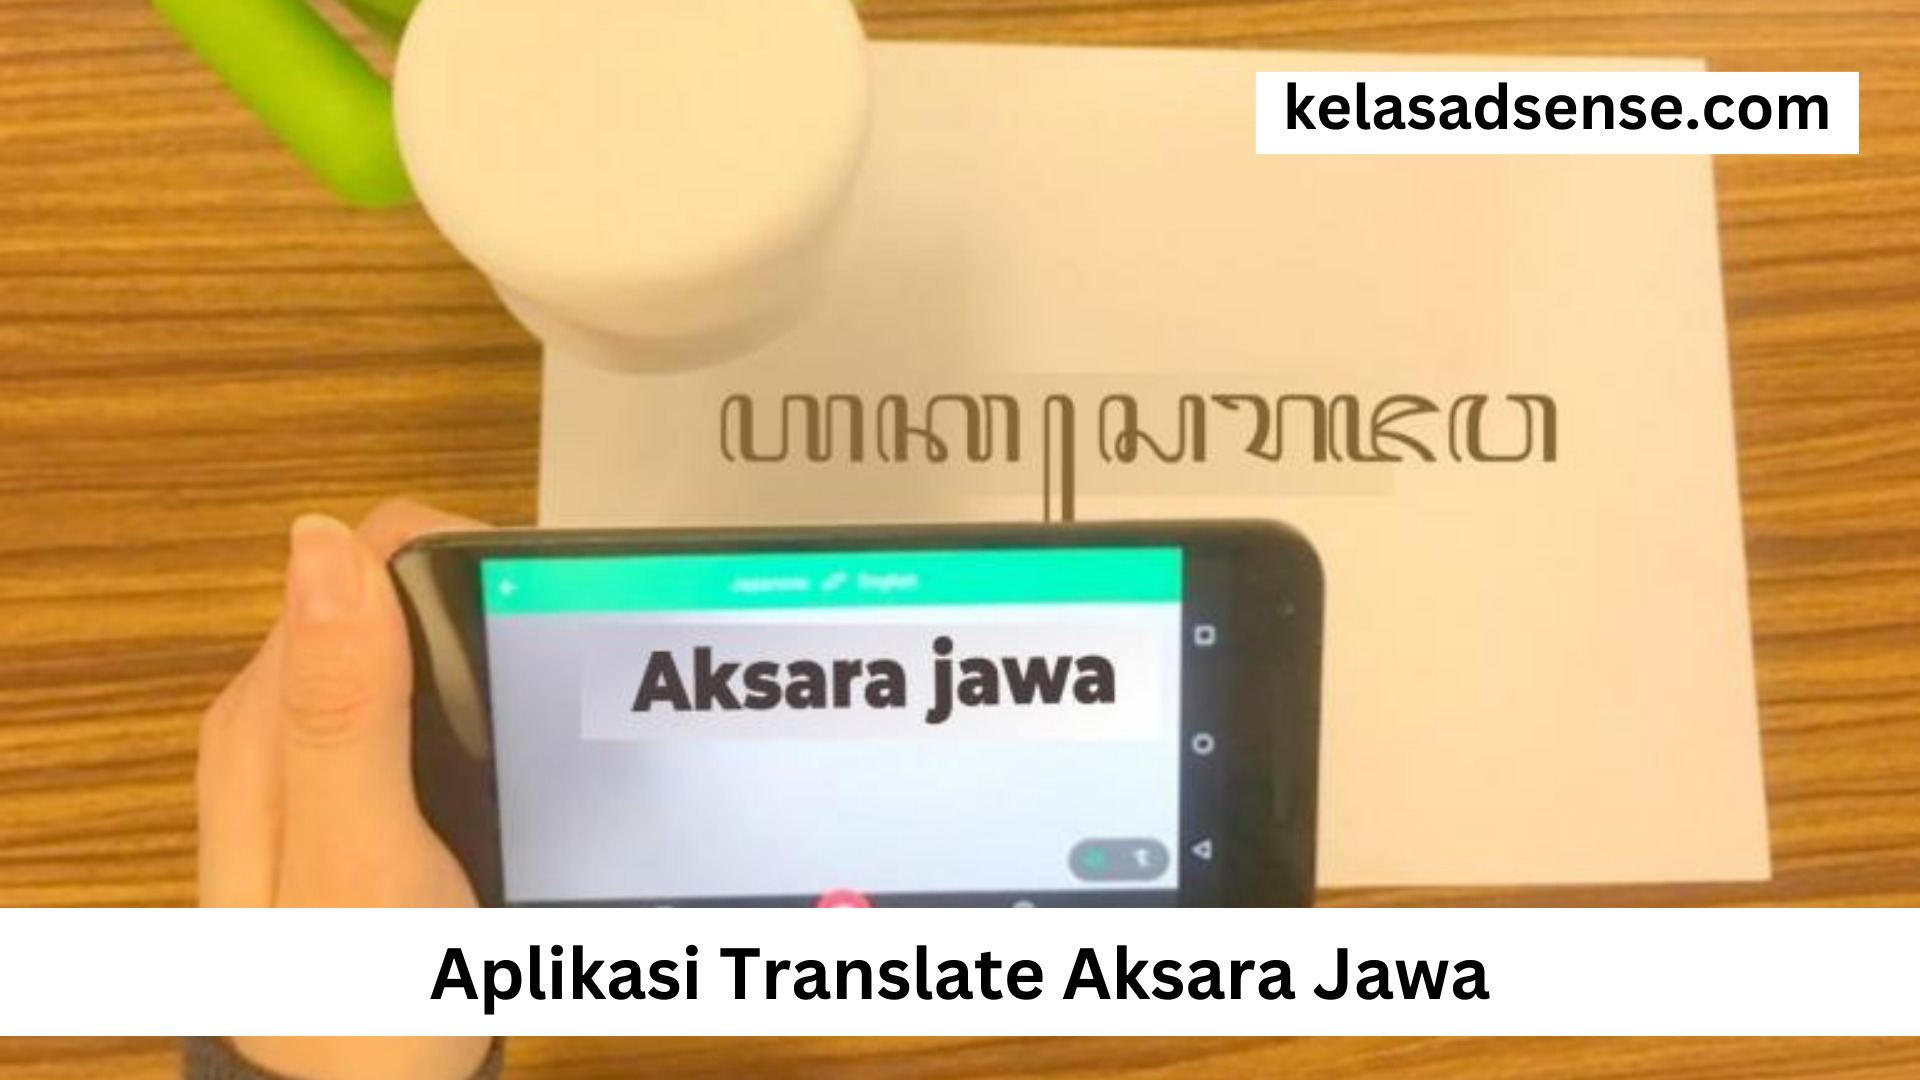 Aplikasi Translate Aksara Jawa